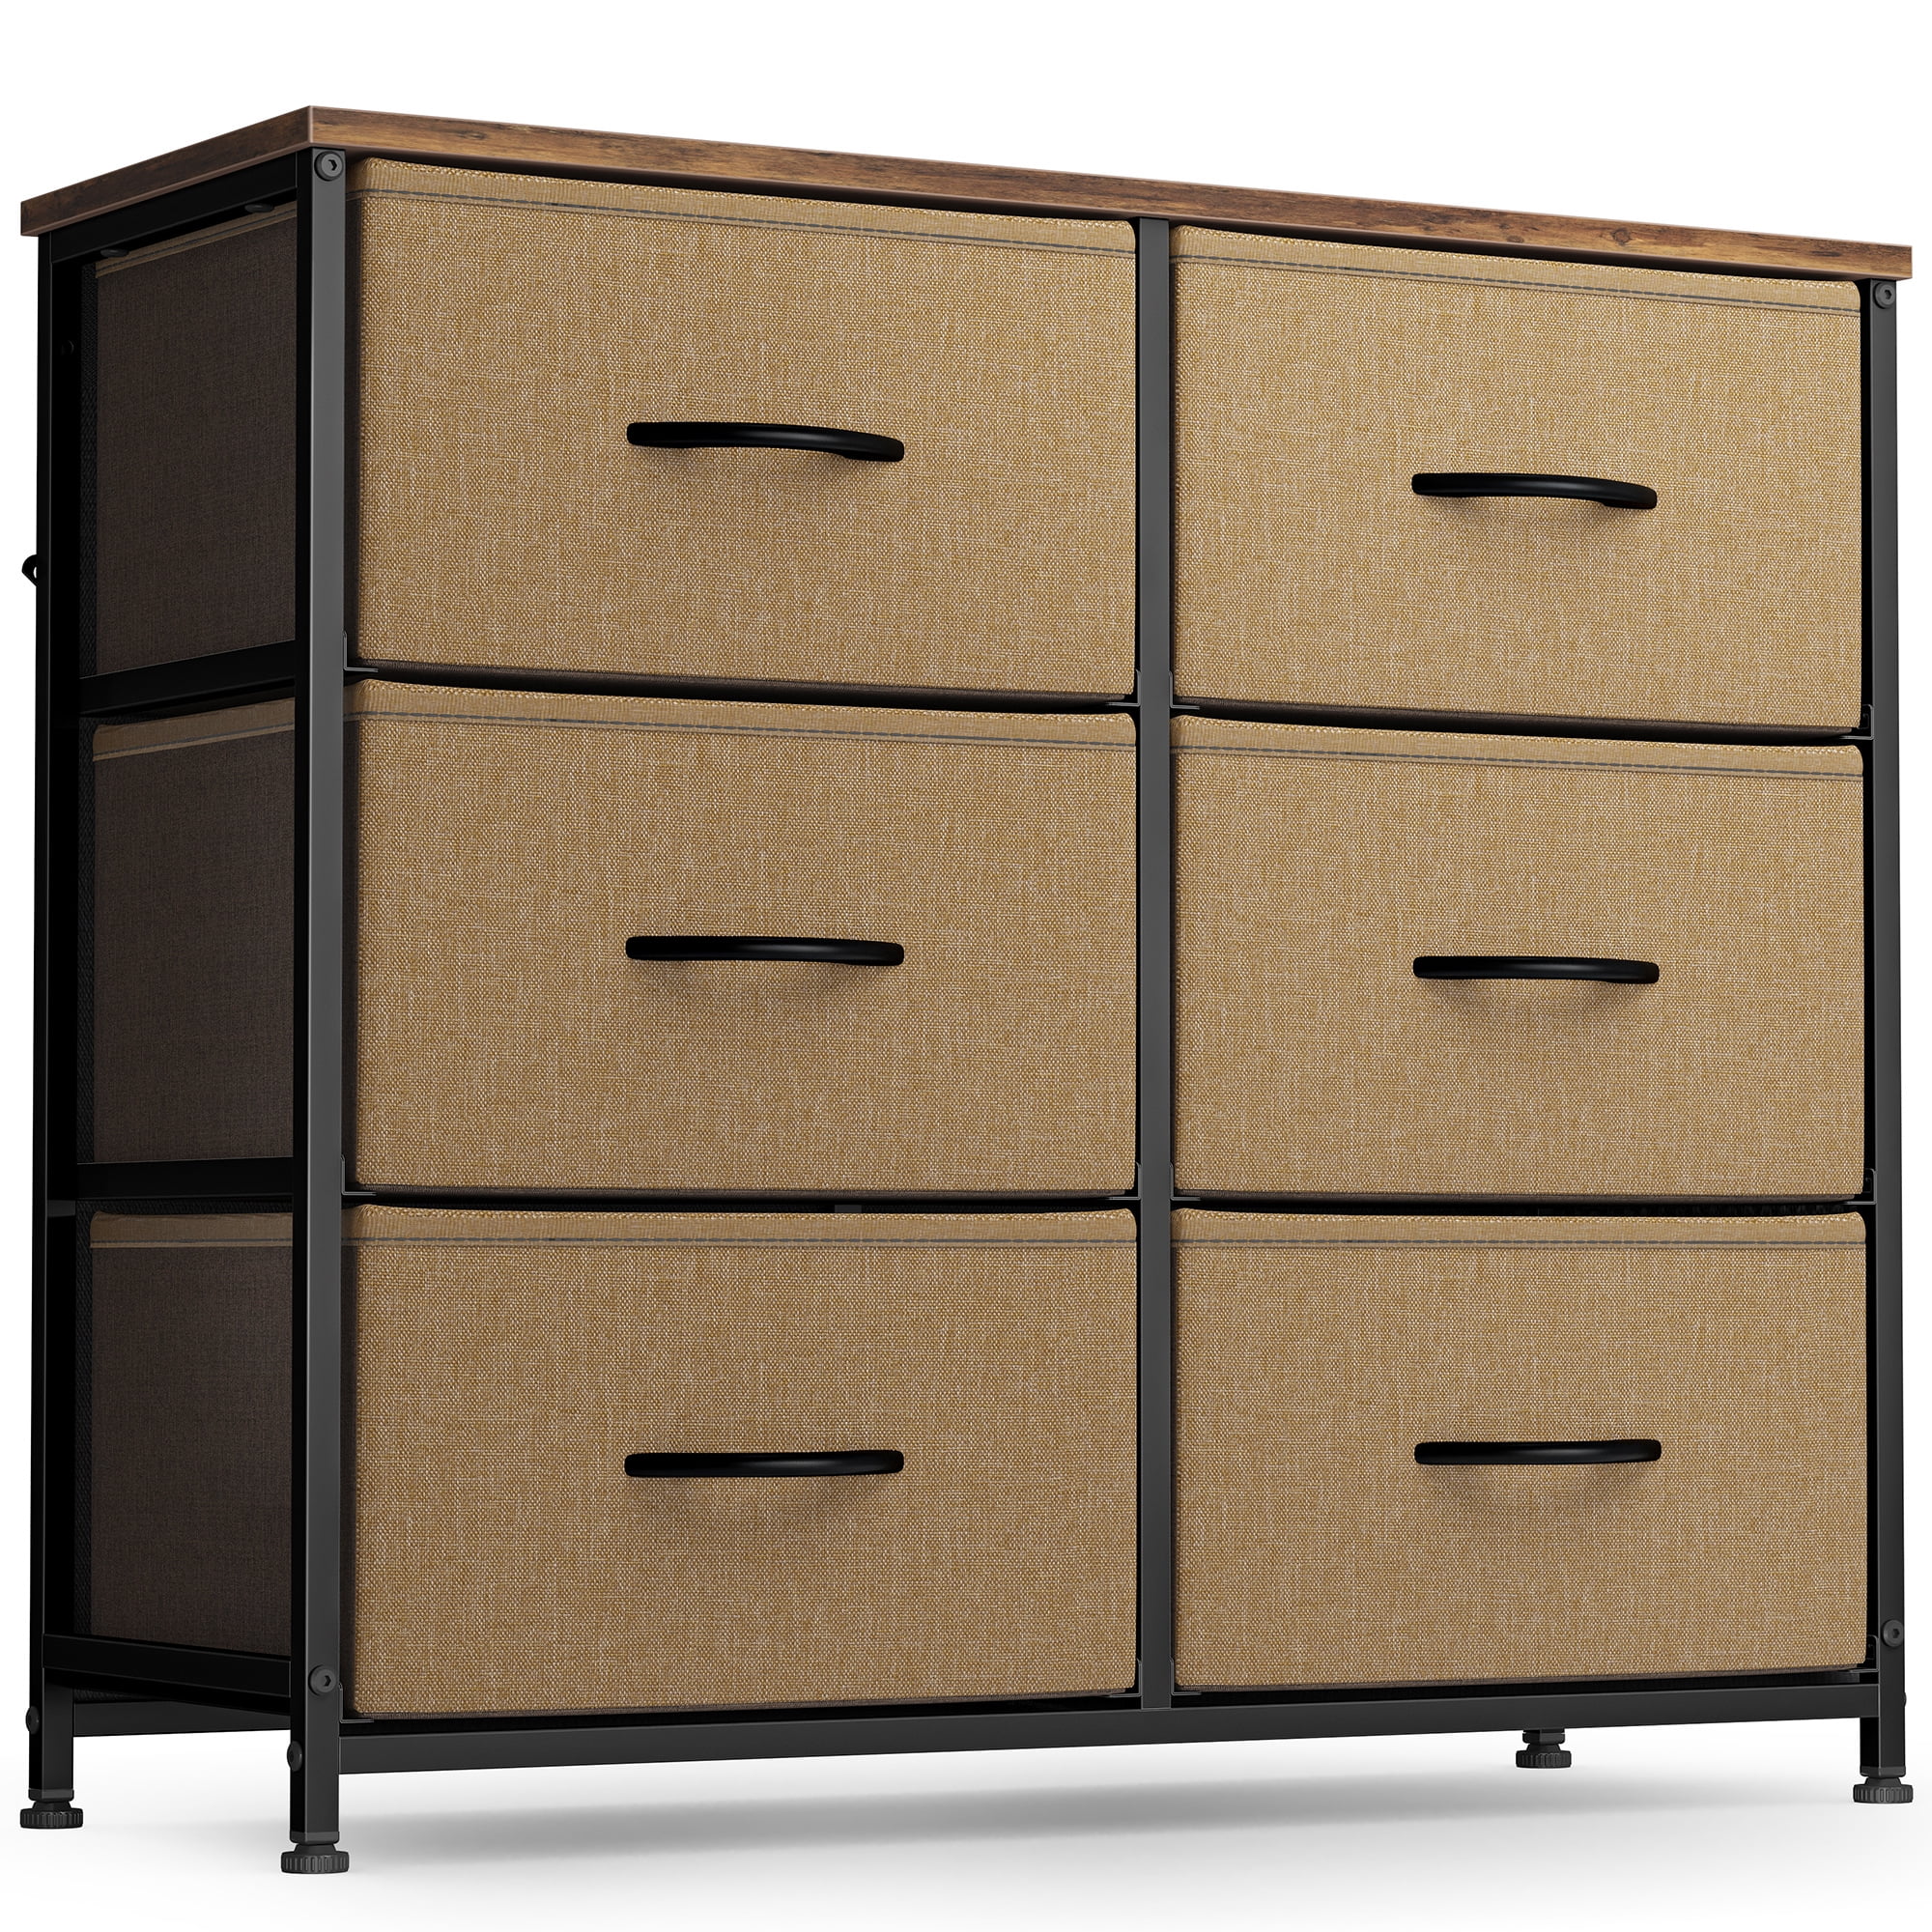 CubiCubi Dresser for Bedroom Sturdy Steel Frame Wood Top 6 Drawer Storage Organizer Tall Wide Dresser for Bedroom Hallway Brown 